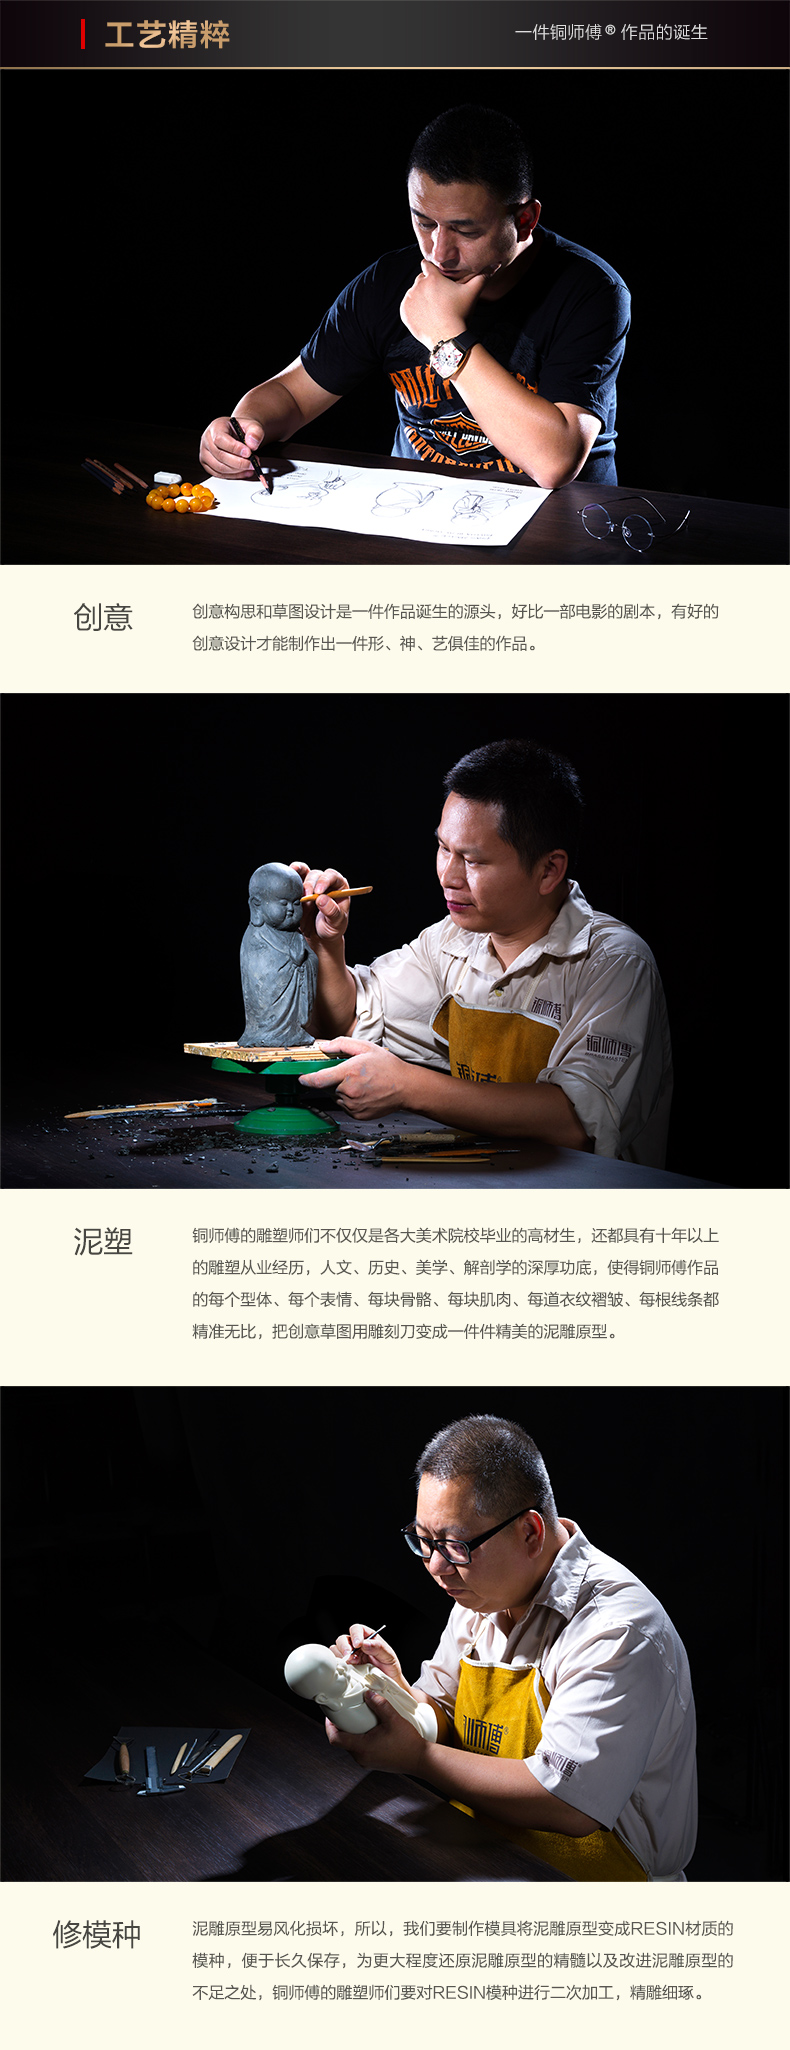 Đồng thạc sĩ đồ trang trí bằng đồng "Royal Tang Mazhi" đồng thủ công mỹ nghệ phụ kiện nhà đồ trang trí món quà